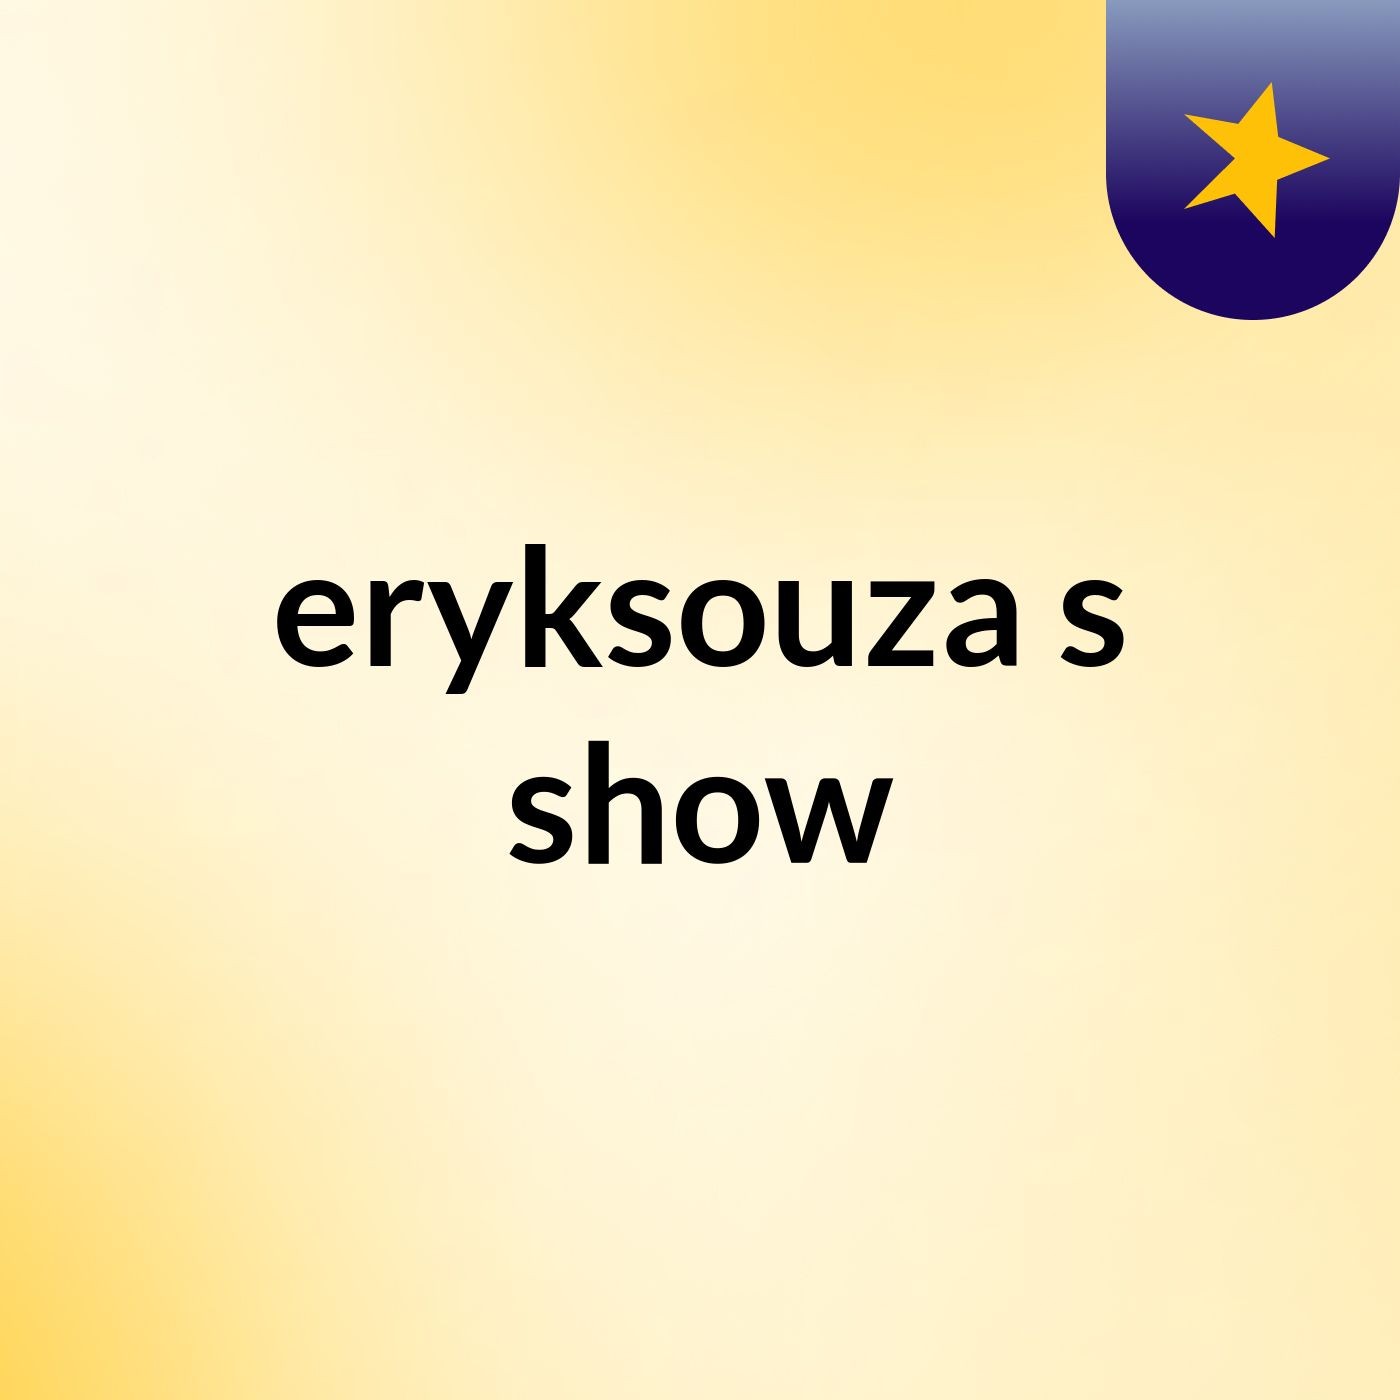 eryksouza's show